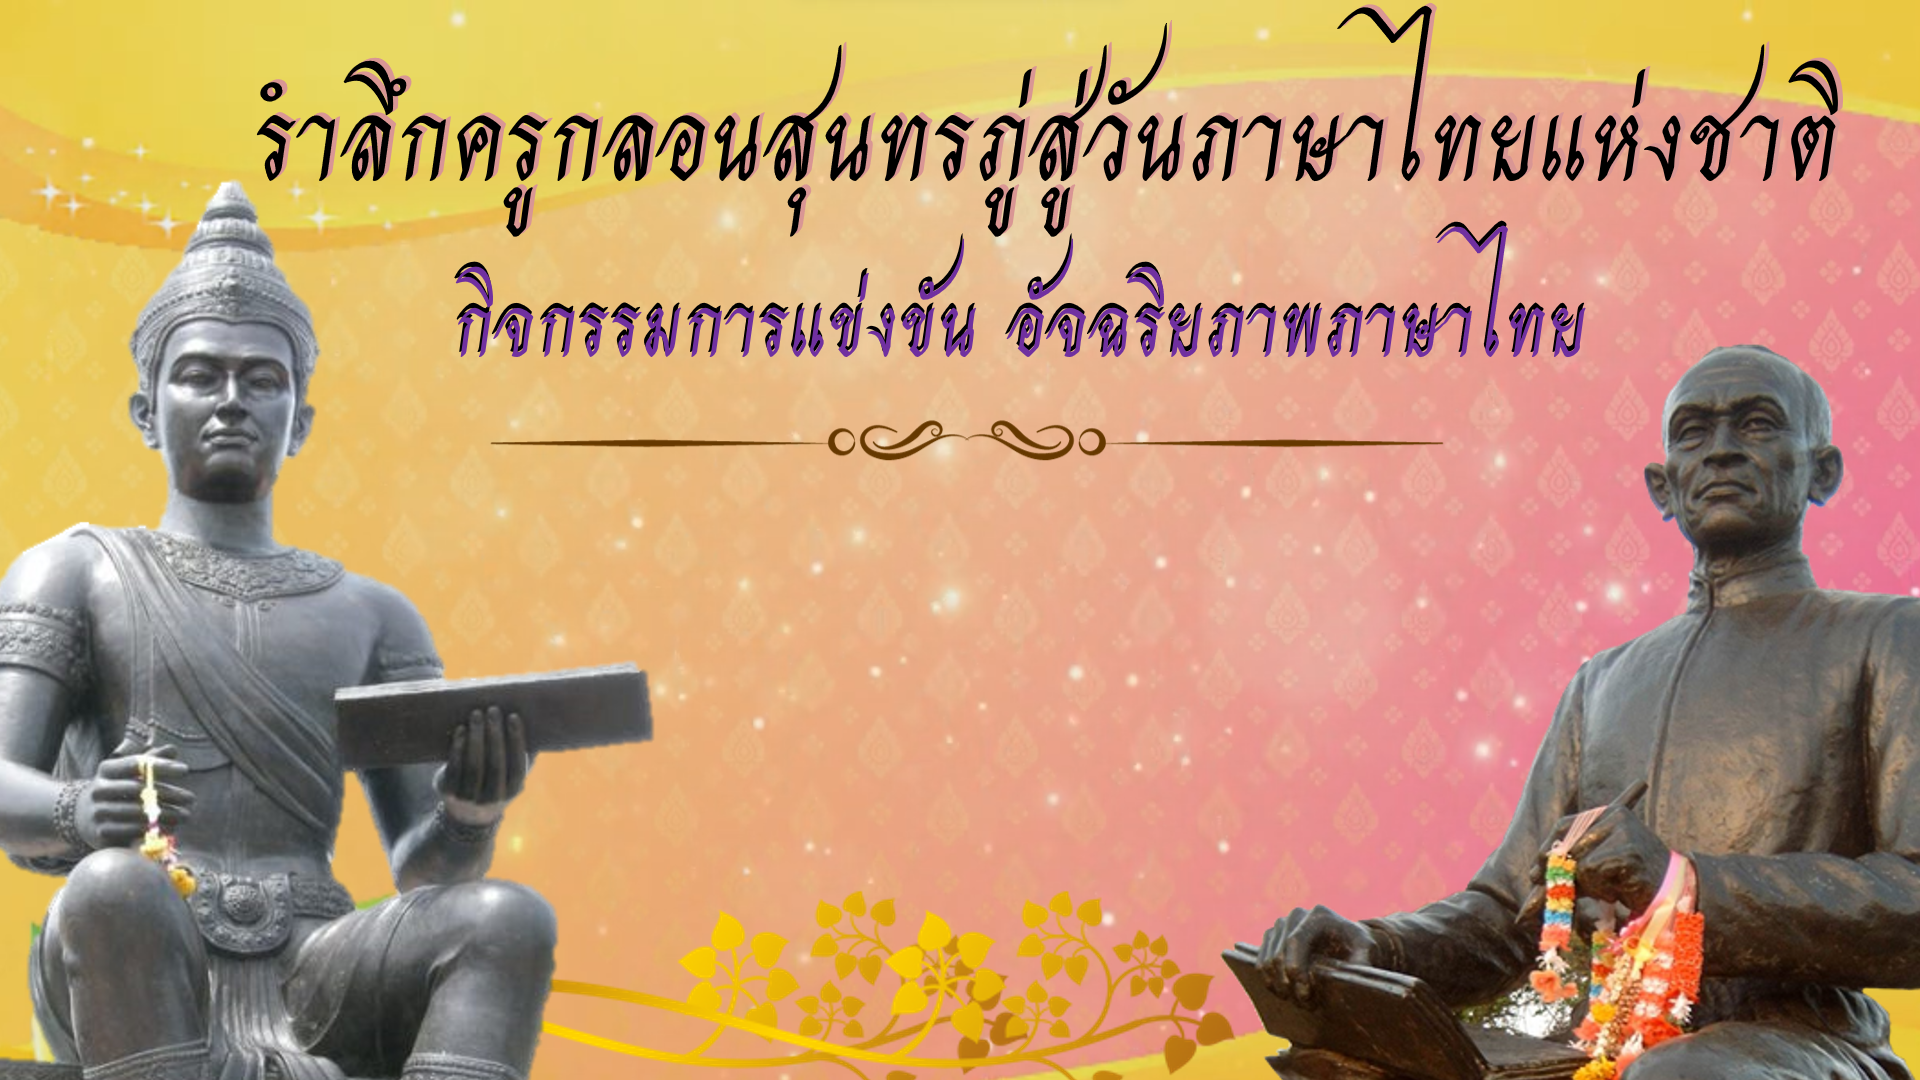 ภาพประกอบไอเดีย การแข่งขัน อัจฉริยภาพภาษาไทย ในวันภาษาไทยและวันสุนทรภู่